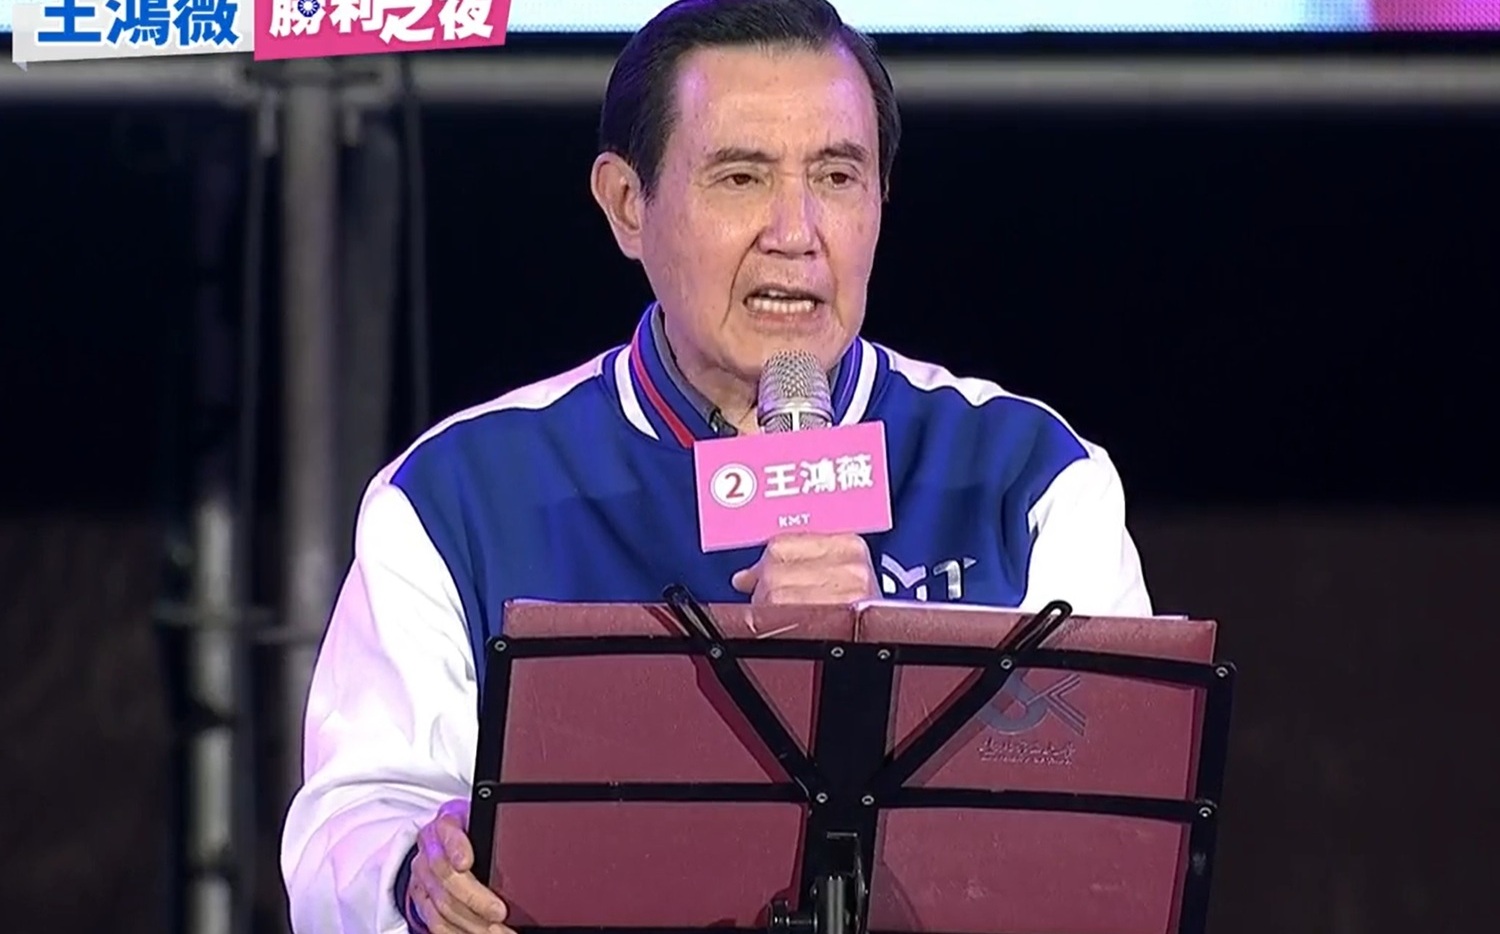 馬英九出席王鴻薇選前之夜 狠批林智堅「作弊又說謊」 | 政治 | New